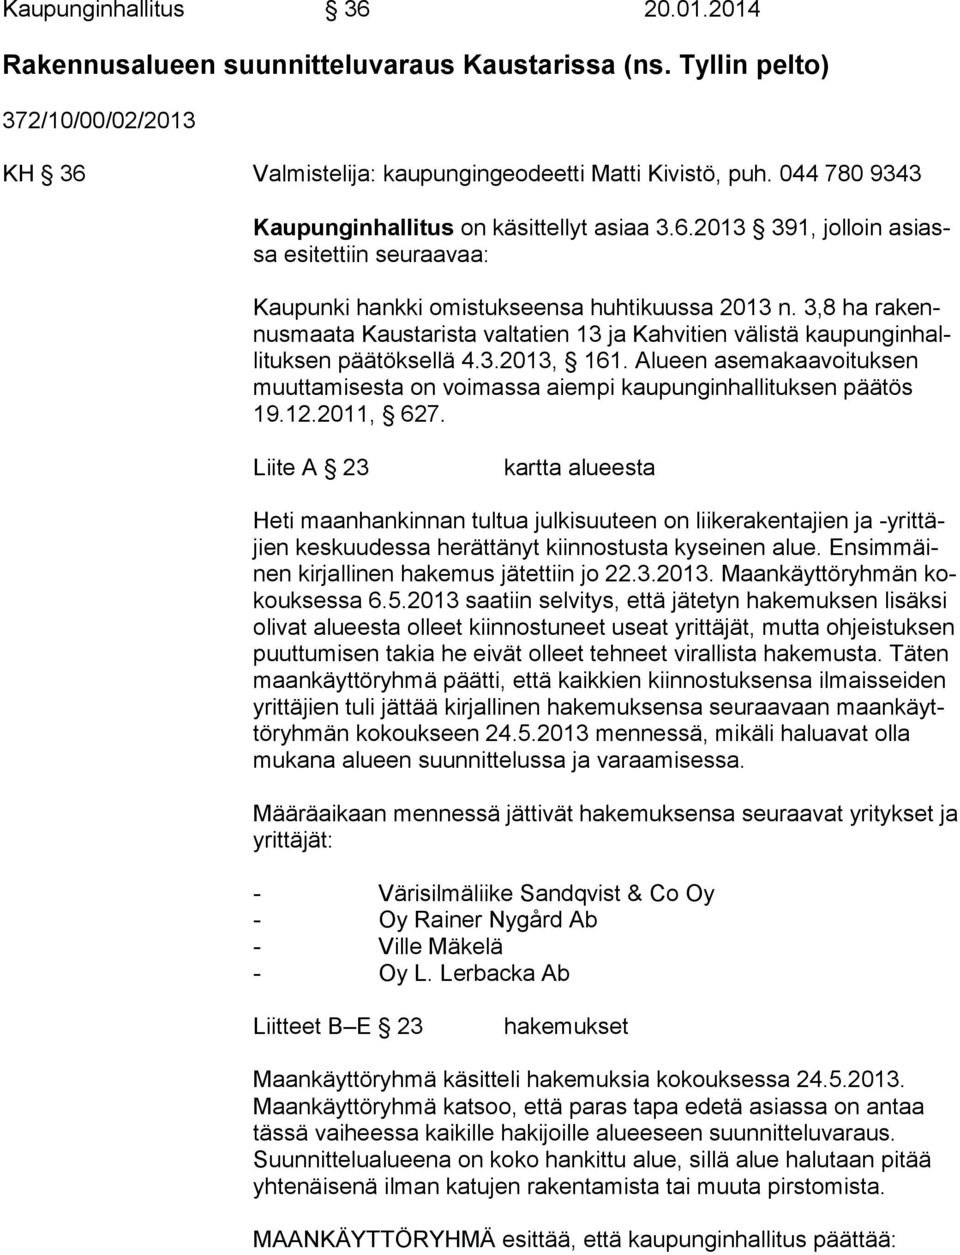 3,8 ha rakennusmaata Kaustarista valtatien 13 ja Kahvitien välistä kaupunginhallituksen päätöksellä 4.3.2013, 161.